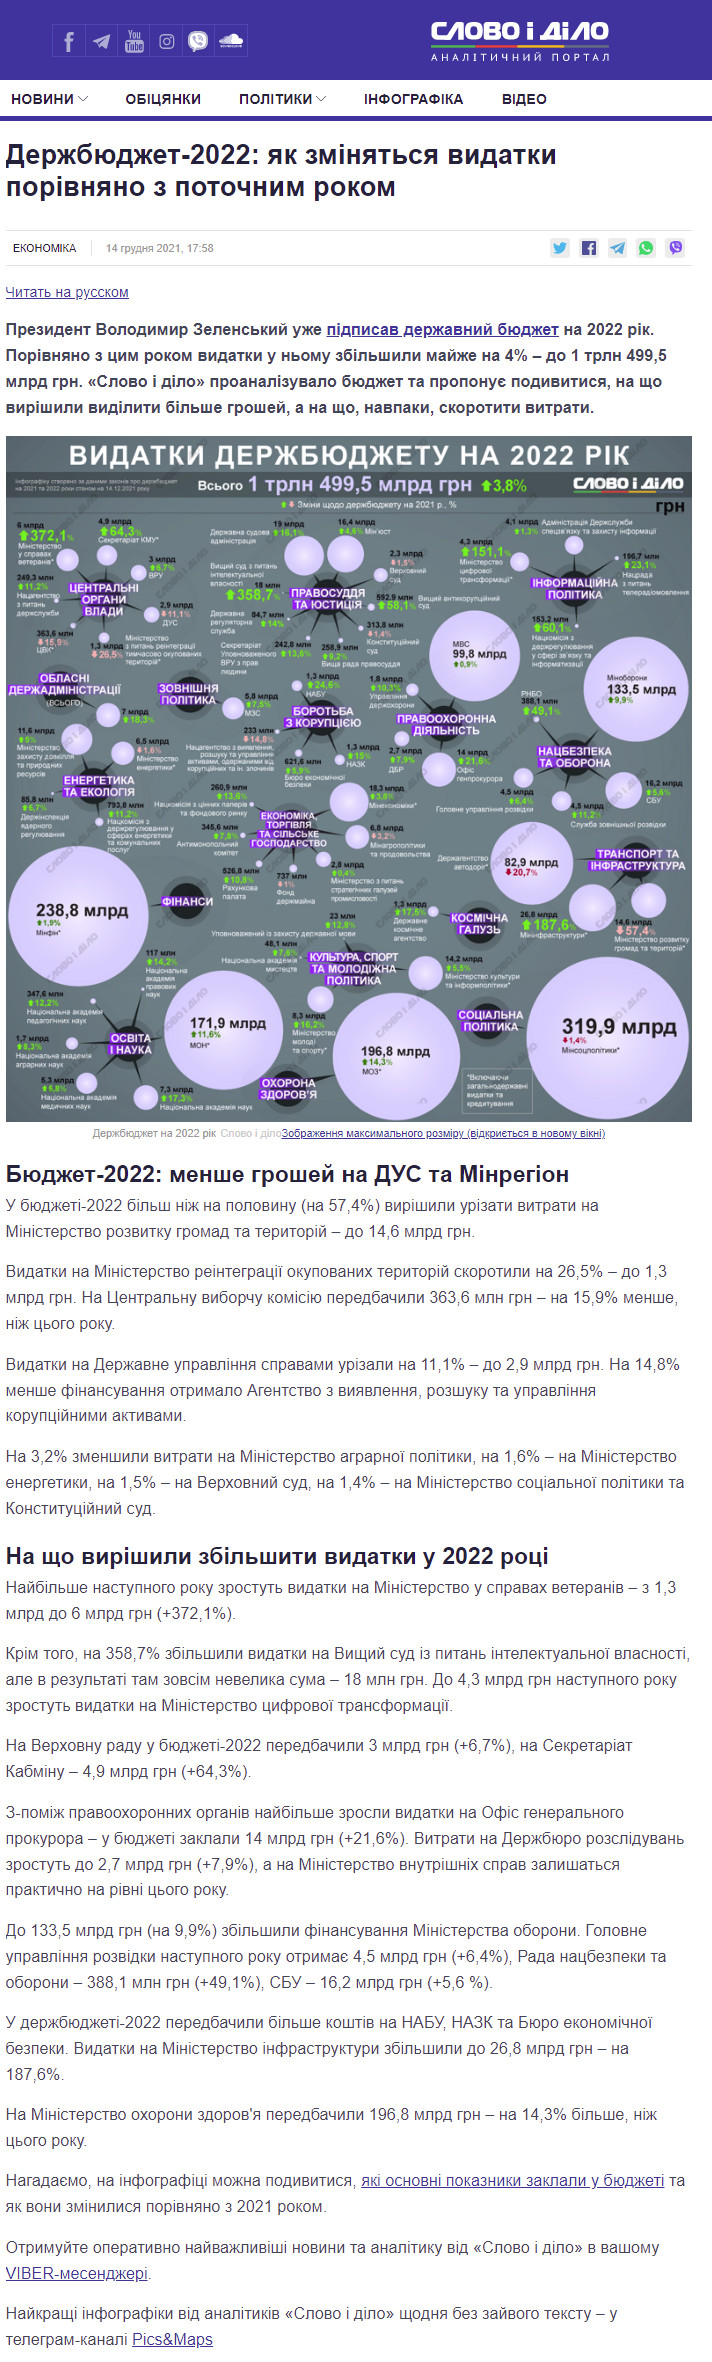 https://www.slovoidilo.ua/2021/12/14/infografika/ekonomika/derzhbyudzhet-2022-yak-zminylysya-vydatky-potochnym-rokom